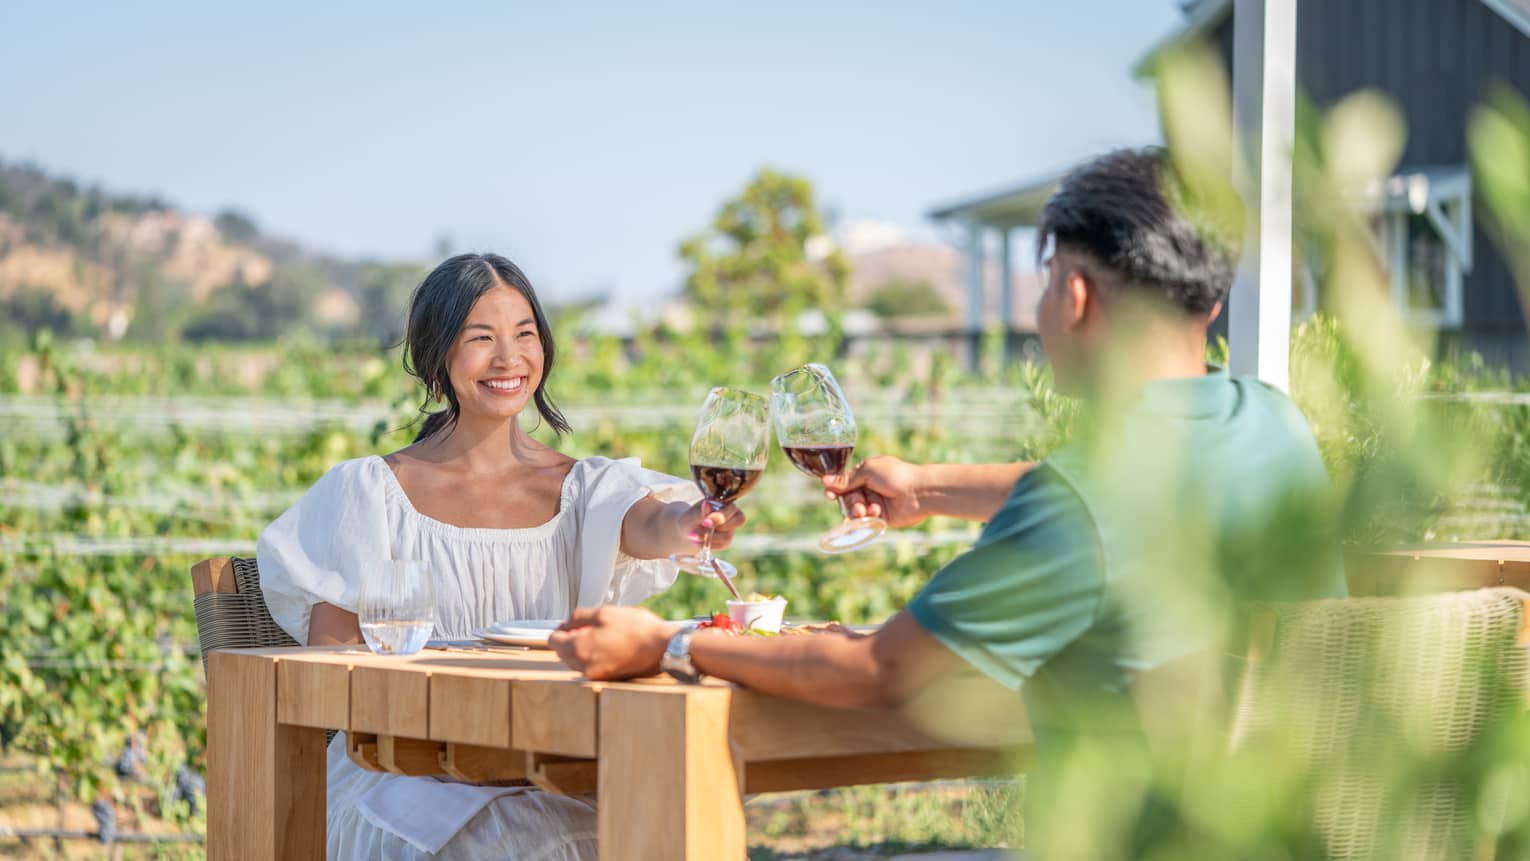 A man and woman enjoying wine outside.